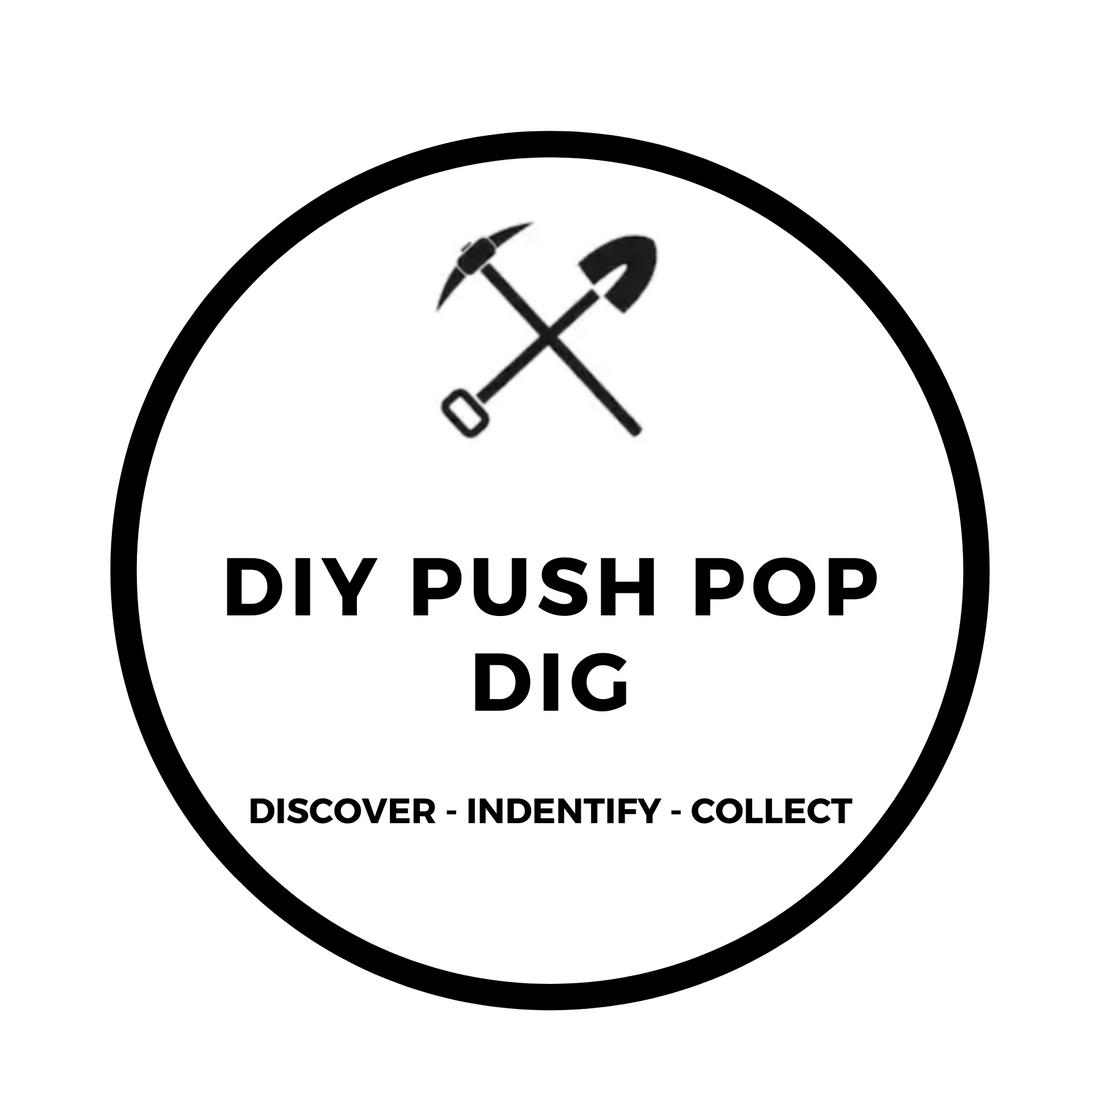 DIY PUSH POP DIG